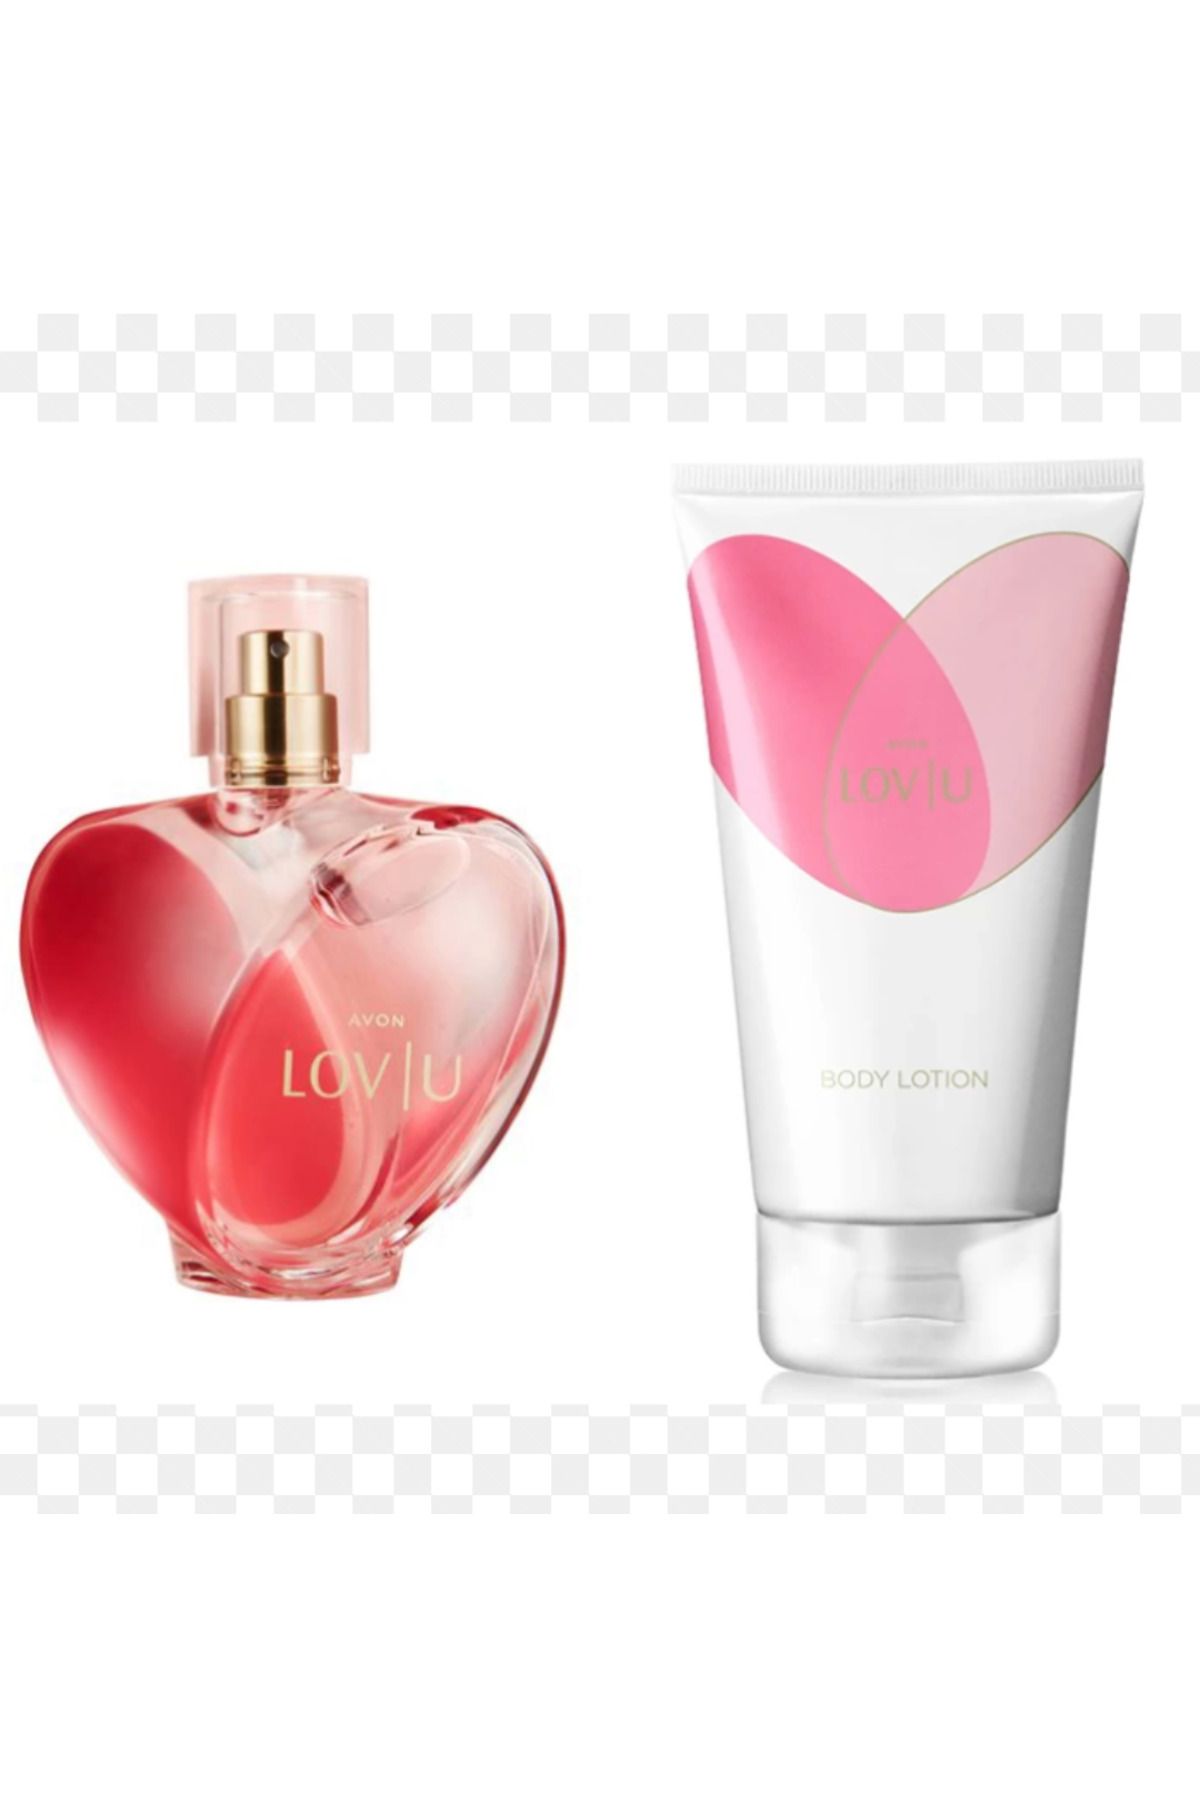 Avon Lovlu Kadın Parfüm 50 Ml +Vucut Losyonu 150 Ml